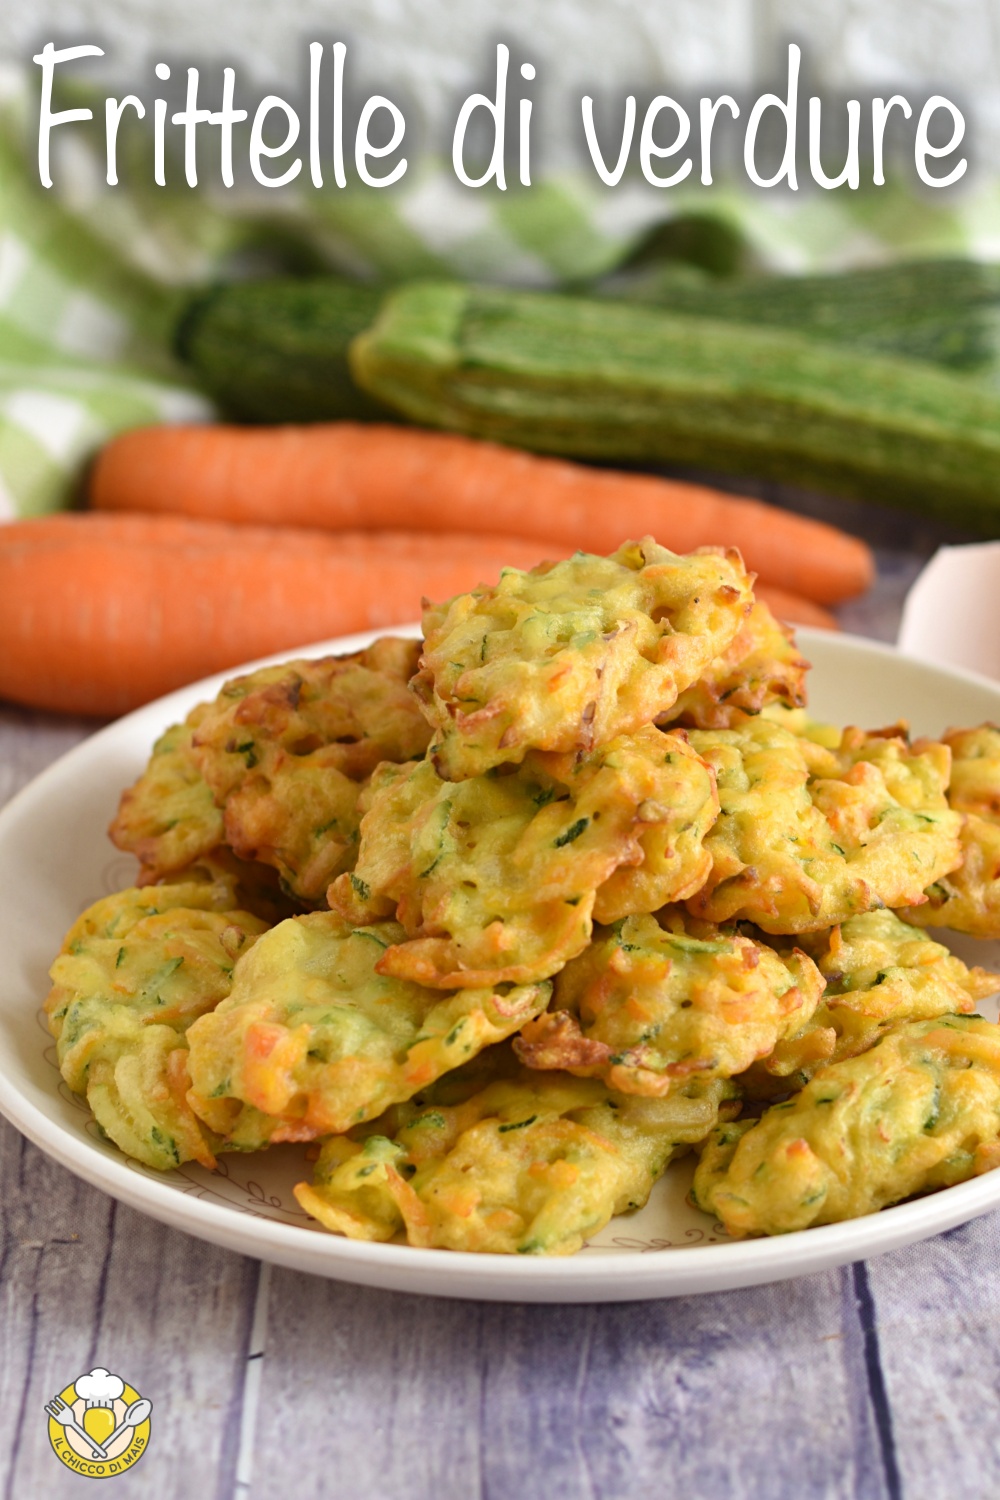 v_ frittelle di verdure al cucchiaio con verdure miste grattugiate carote zucchine cipolla anche senas glutine il chicco di mais